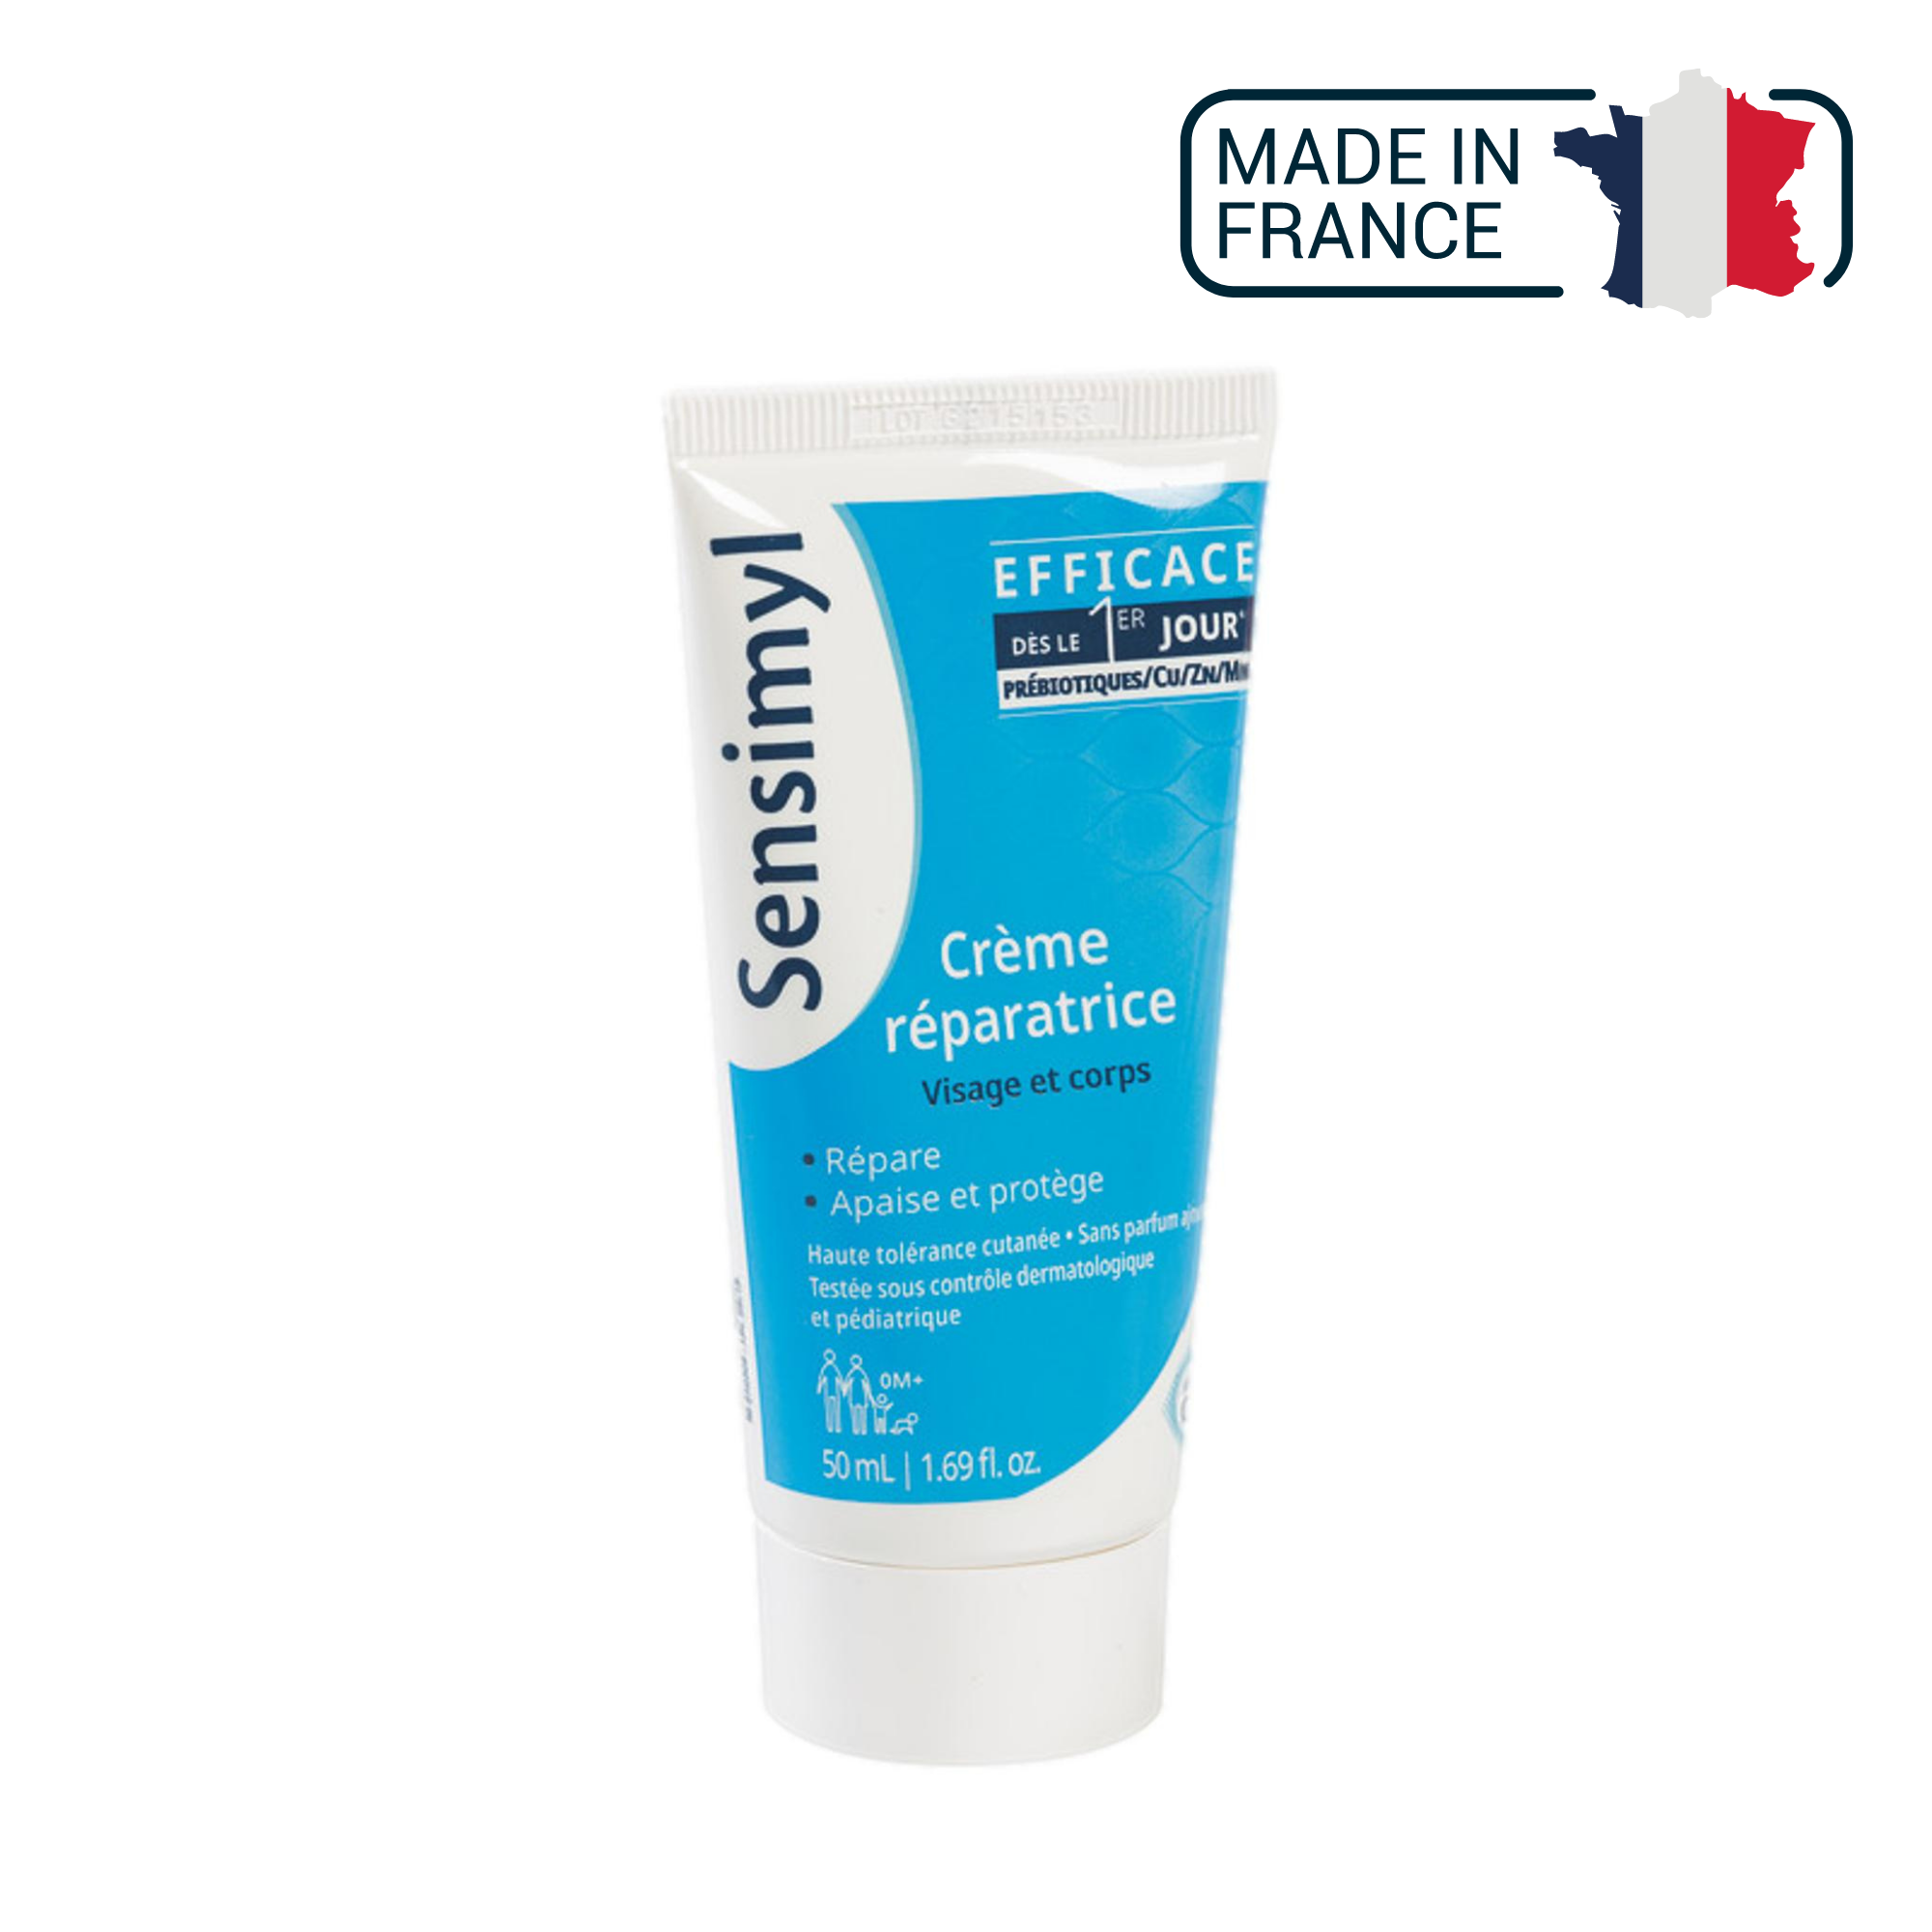 Crème réparatrice - Apaise et protège - 50 ml - Sensimyl